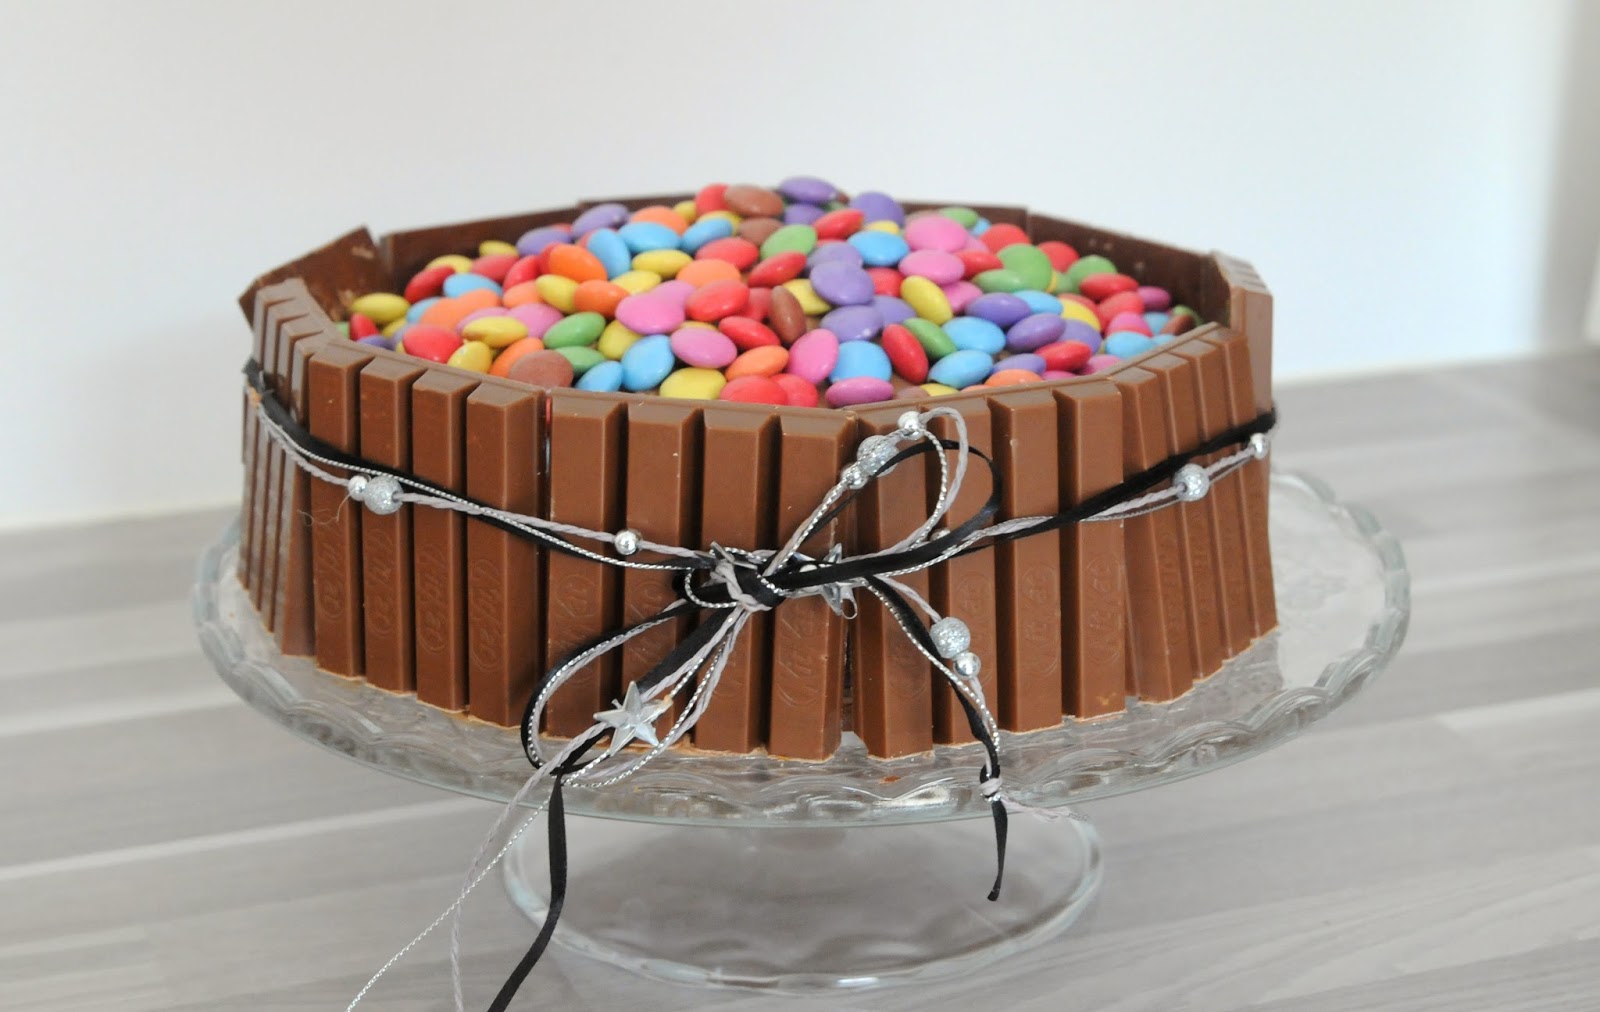 Gâteau au chocolat, kit kat et smarties pour 8 personnes